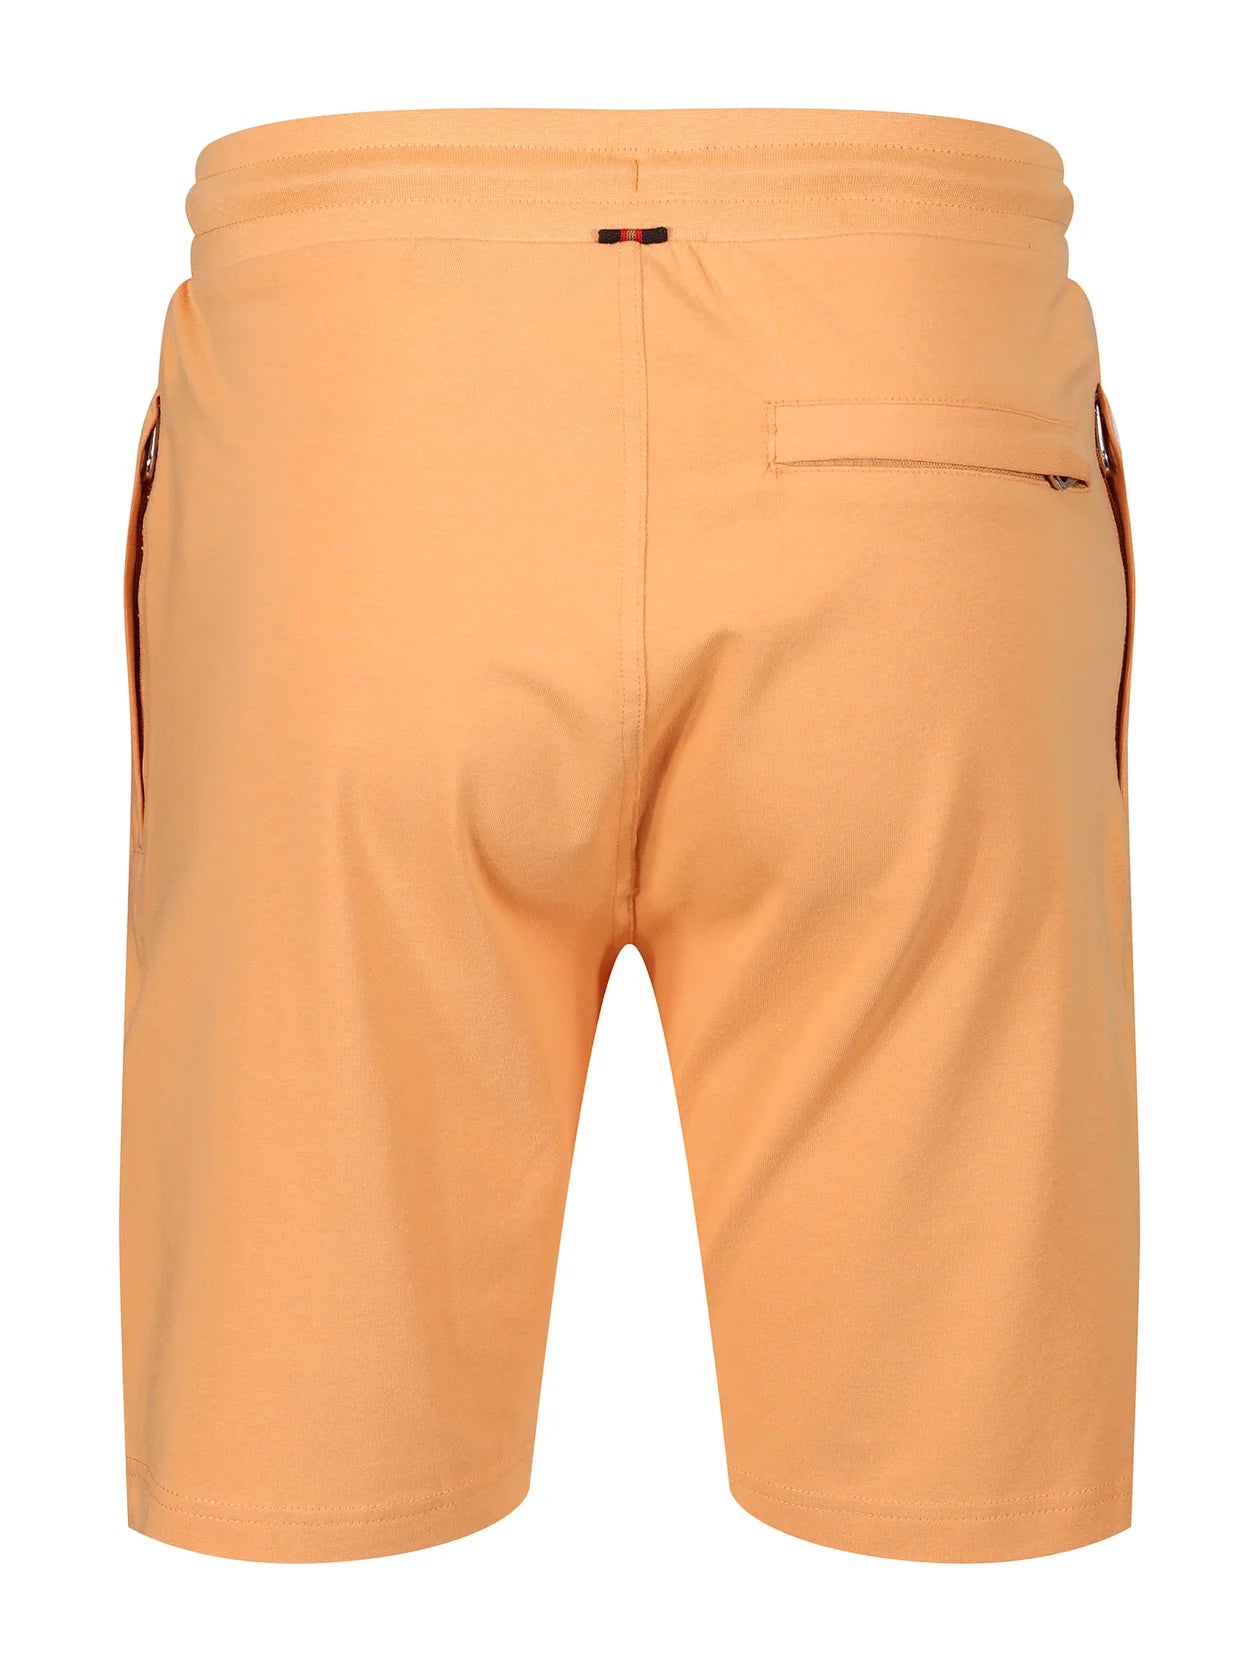 Luke 1977 Smashing Sweat Shorts Apricot - Raw Menswear